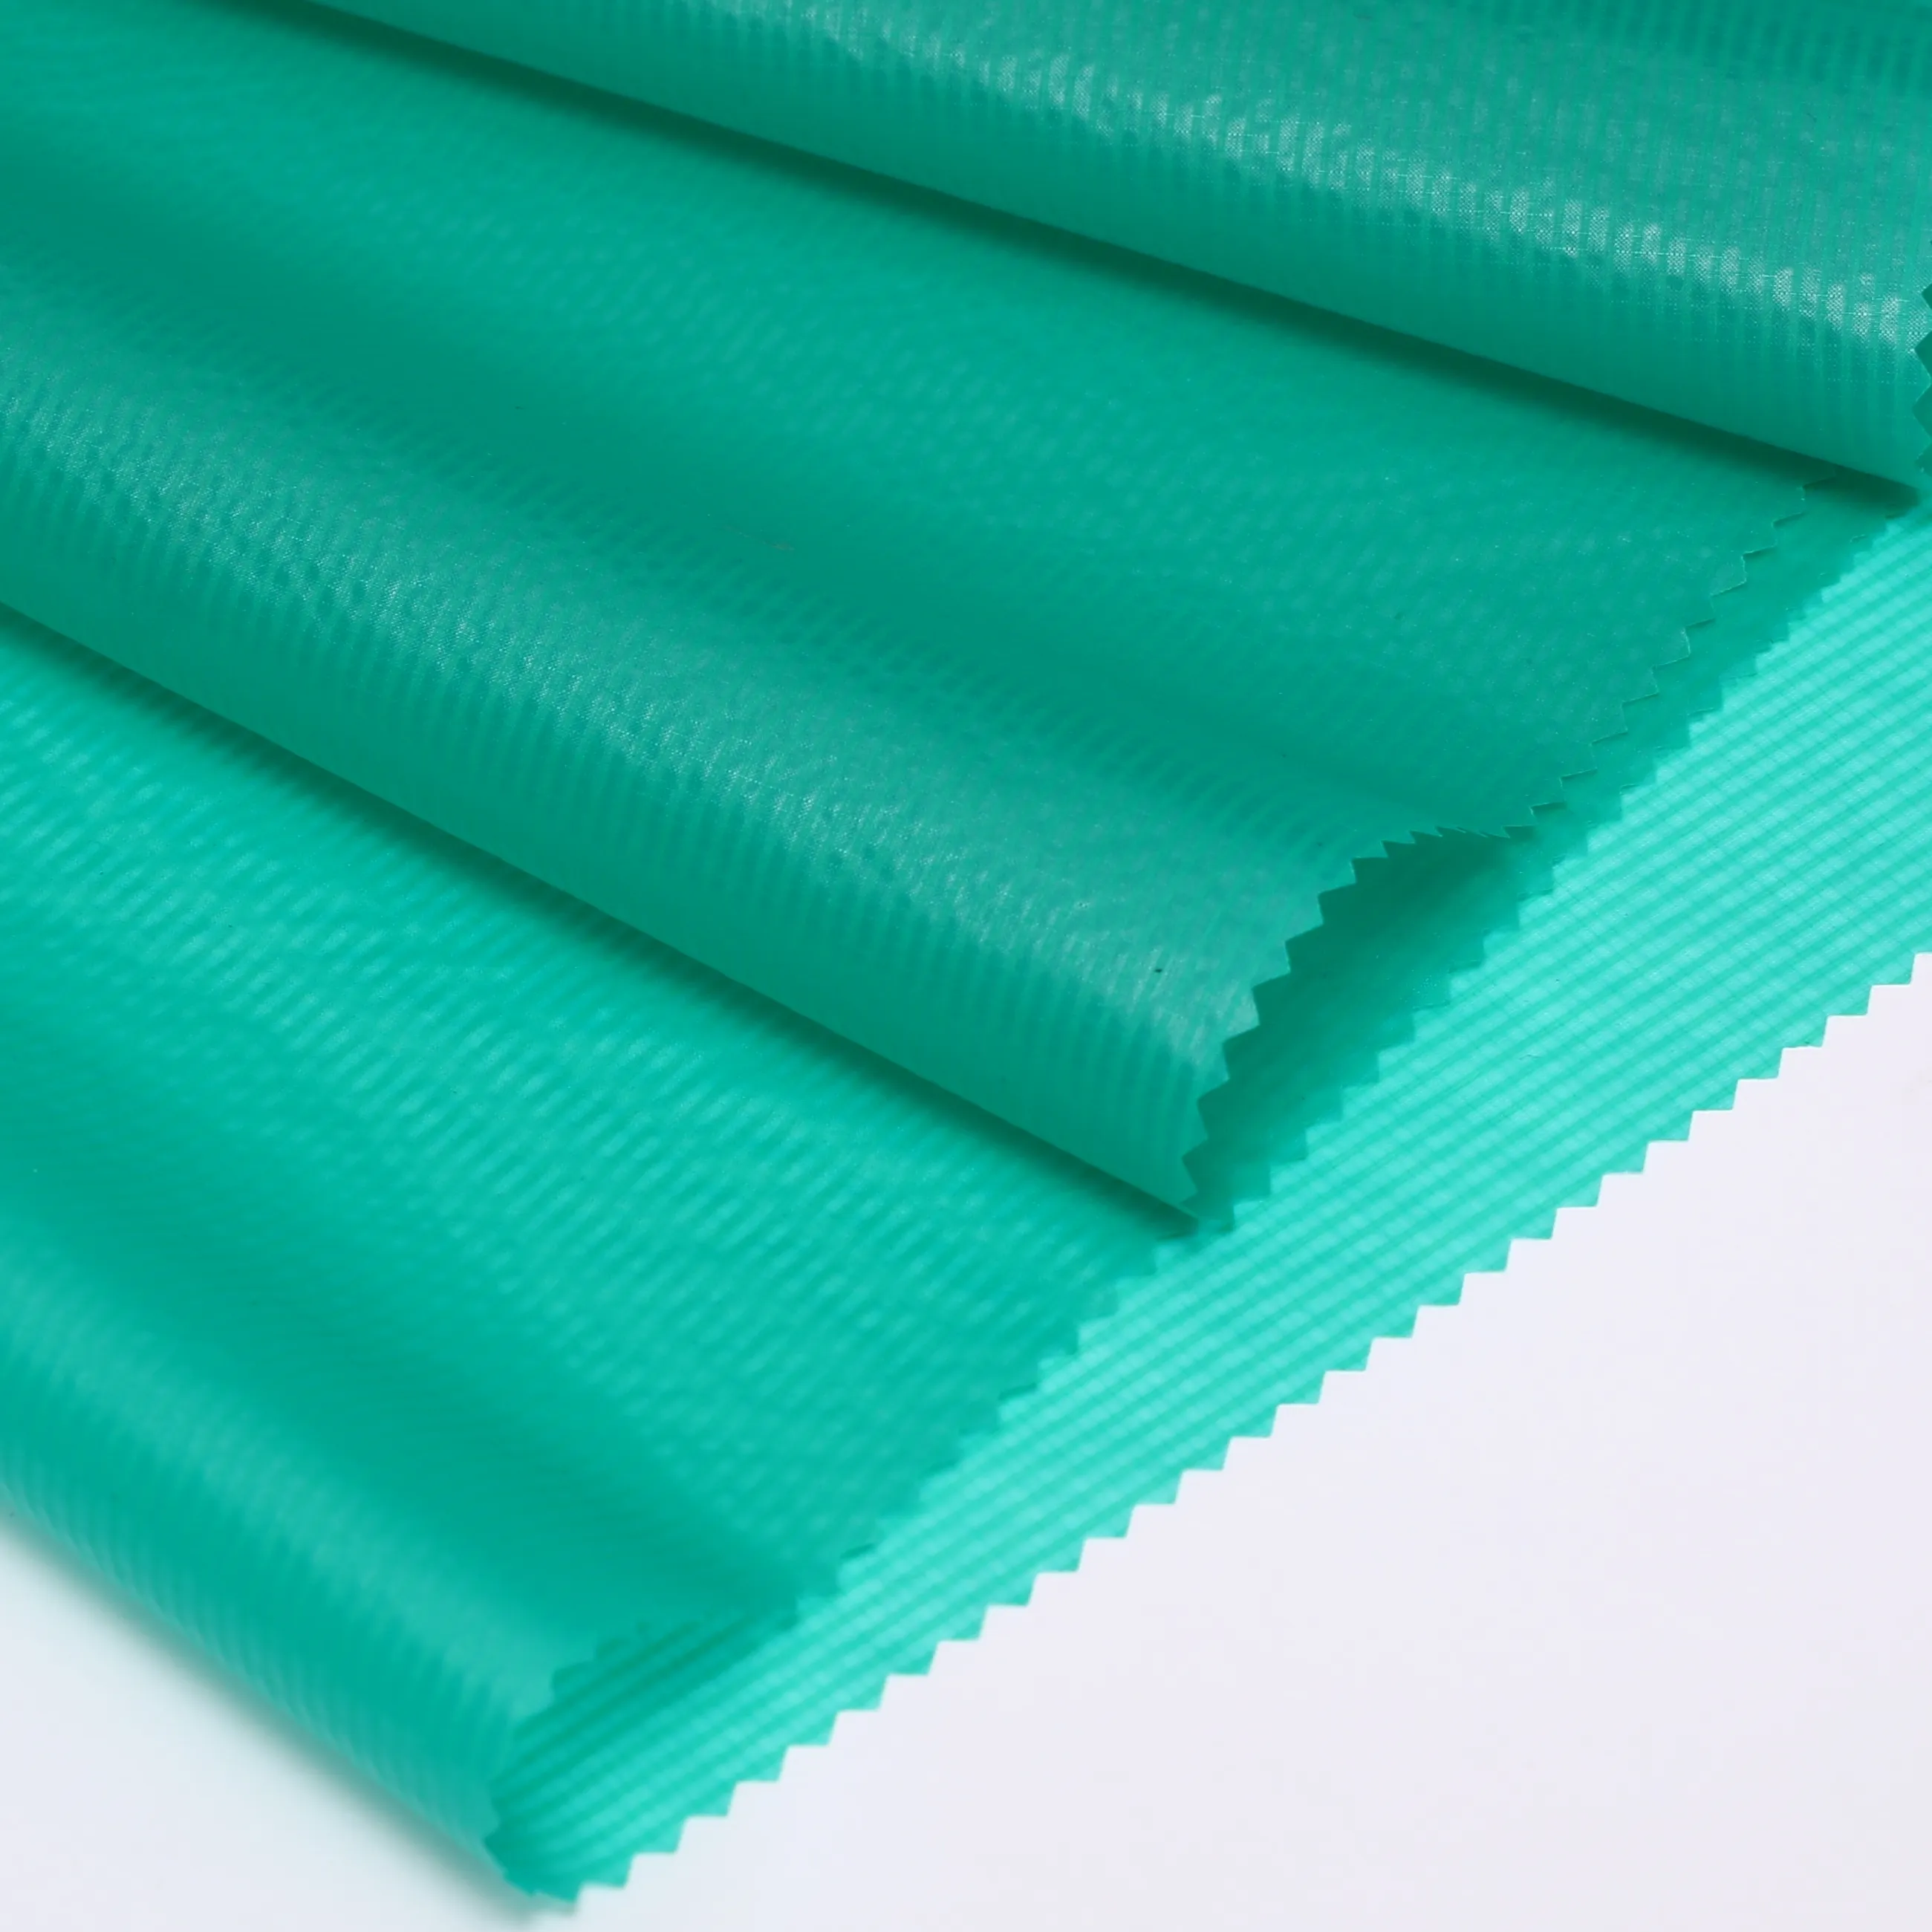 15D ultralight Tessuto di Nylon Ripstop-impermeabile/antivento per tenda